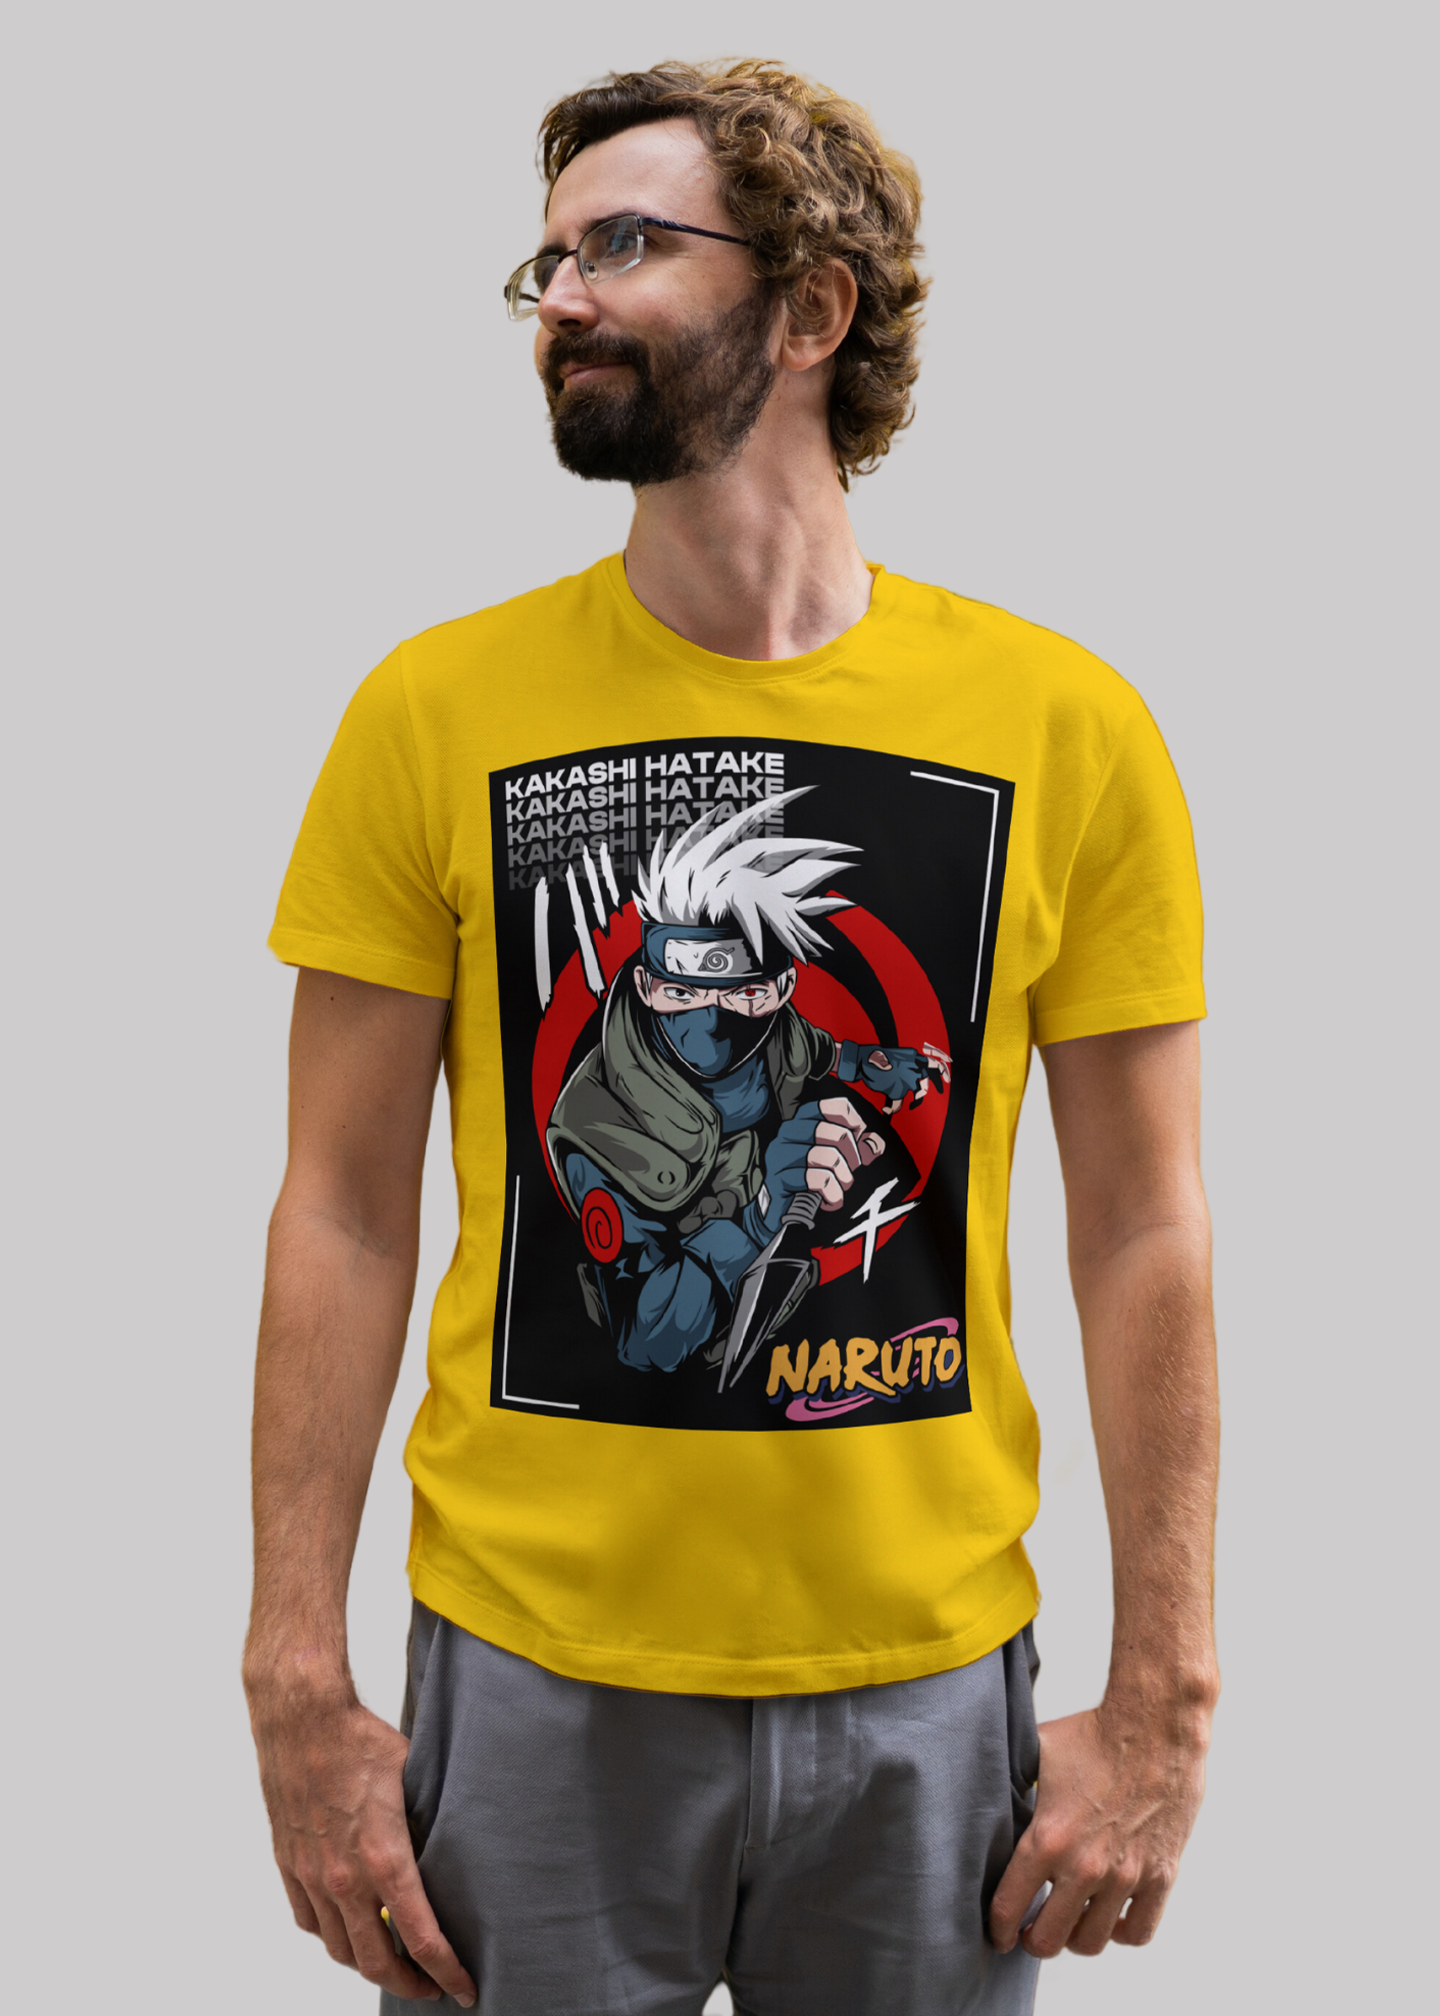 Kakashi hatake Naruto Printed Half Sleeve Premium Cotton T-shirt For Men